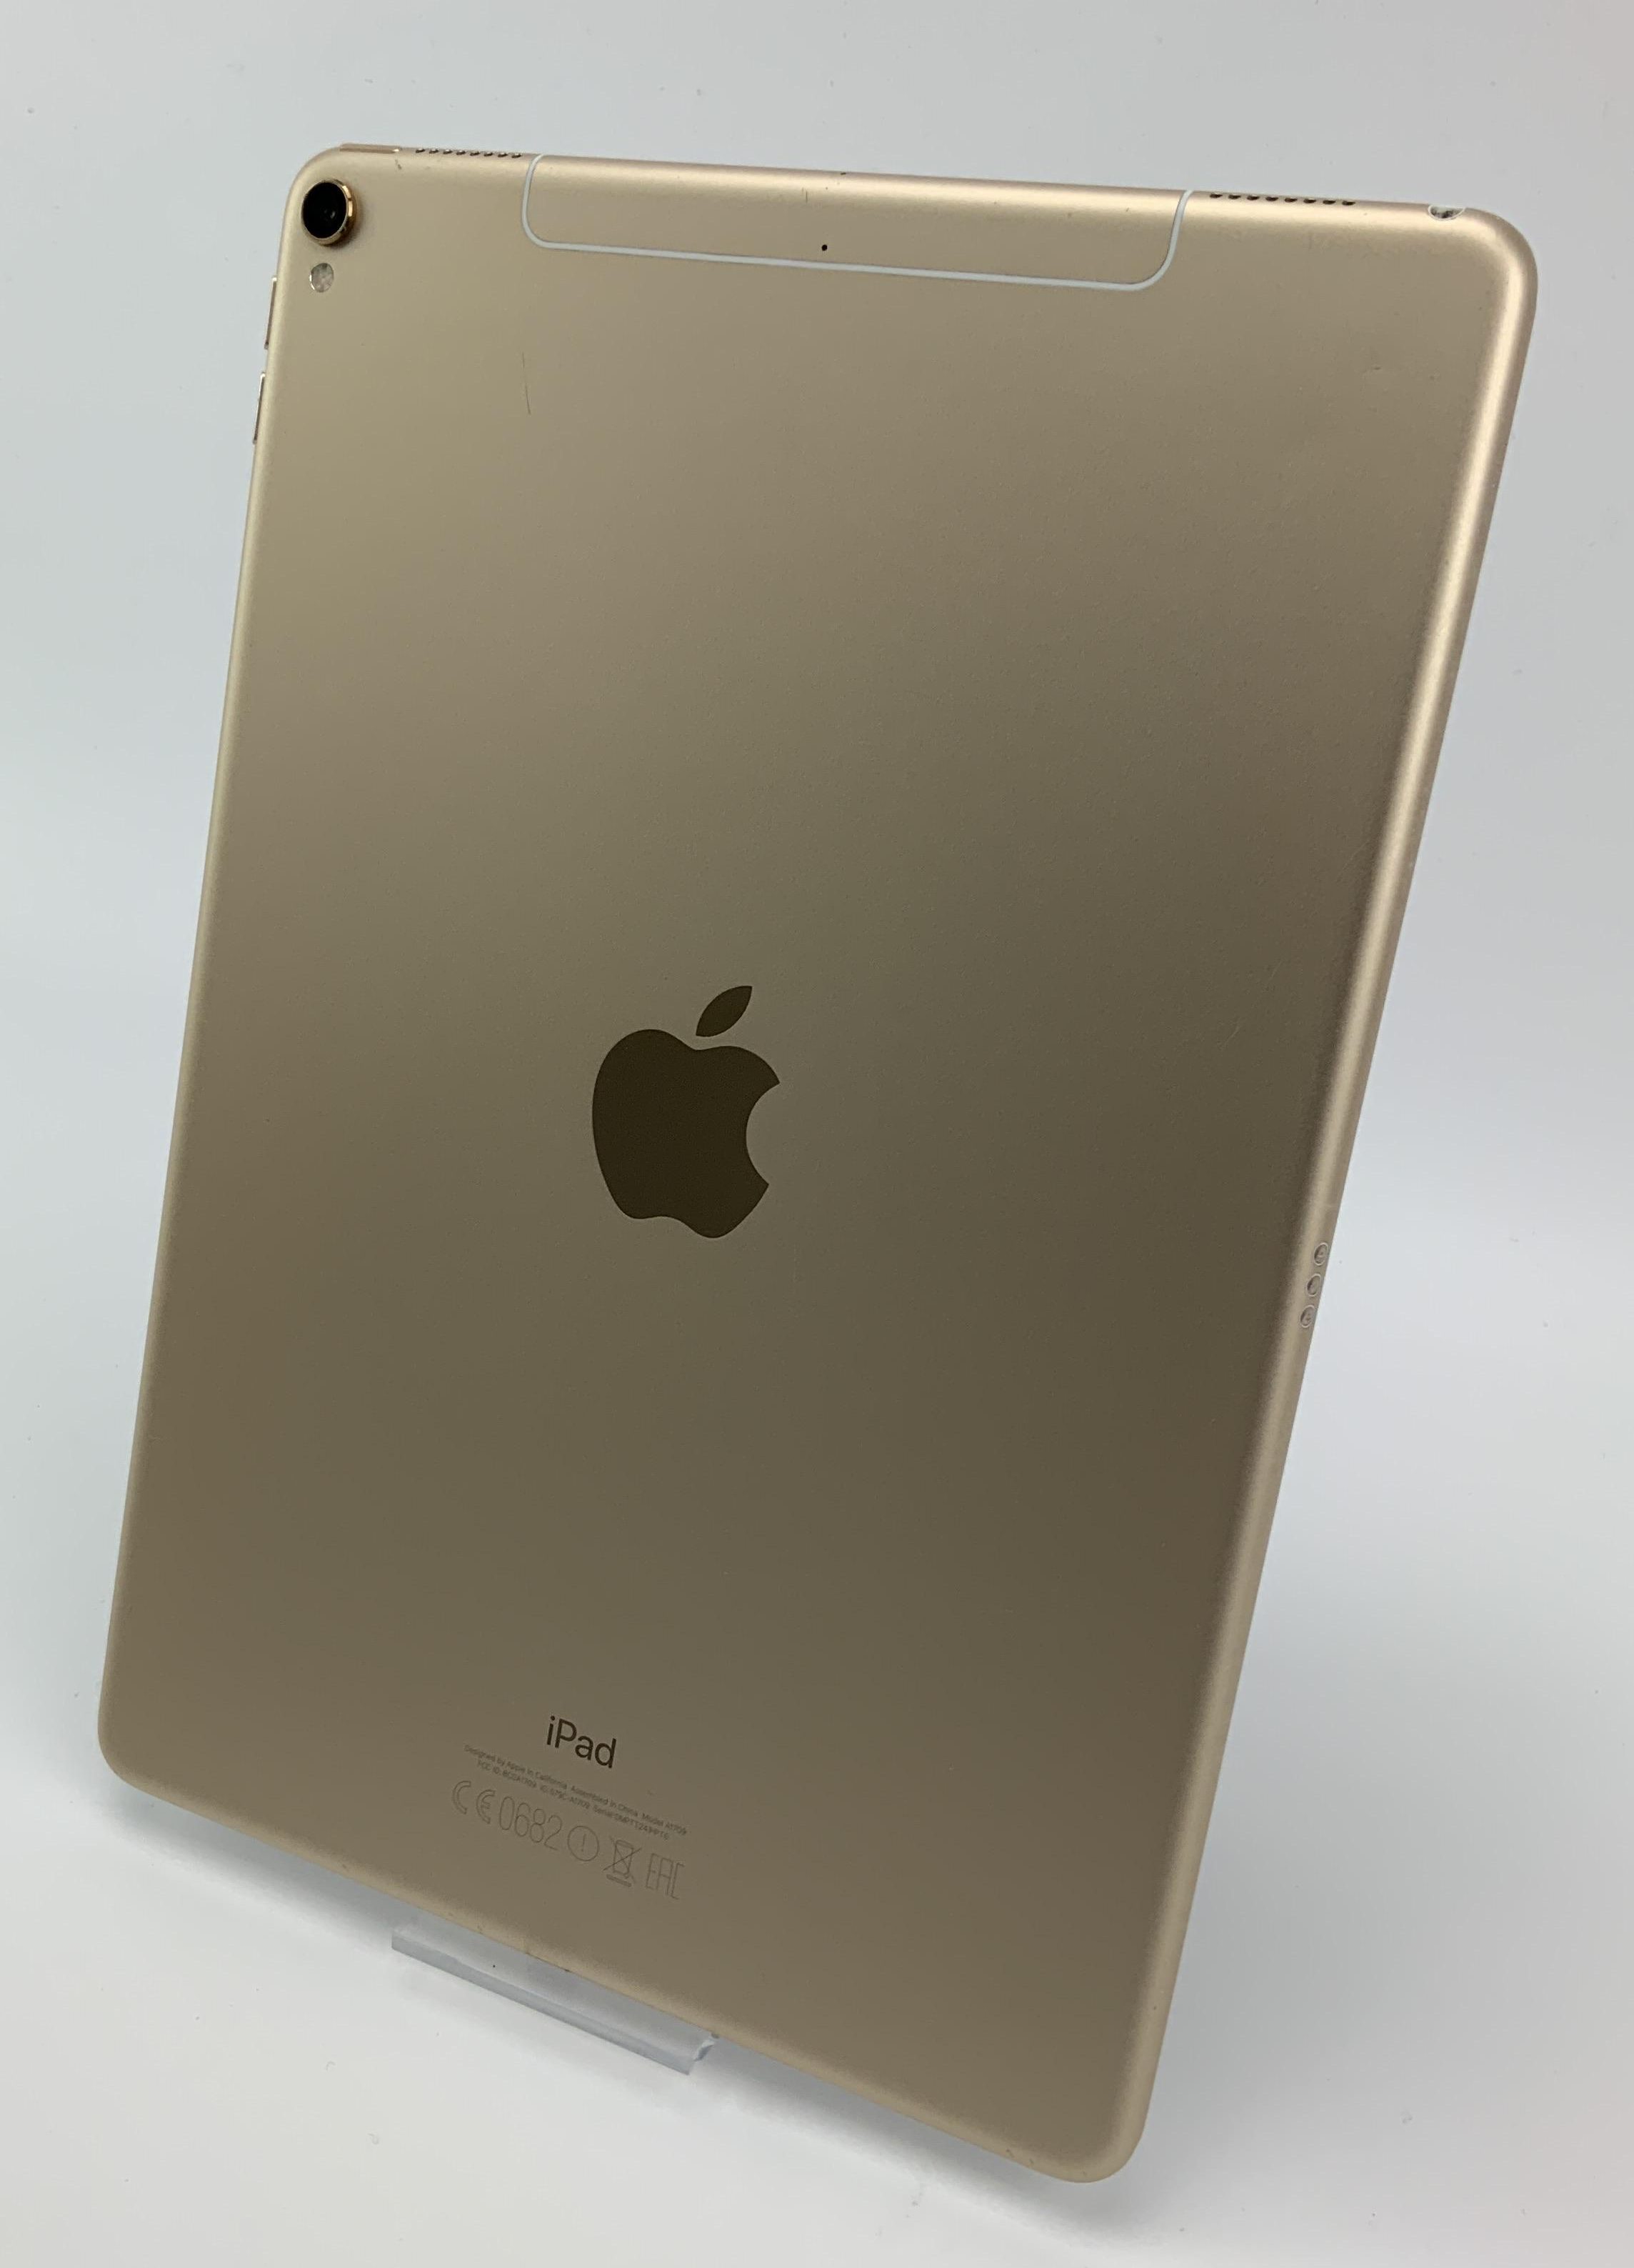 iPad Pro 10.5" Wi-Fi + Cellular 512GB, 512GB, Gold, immagine 2